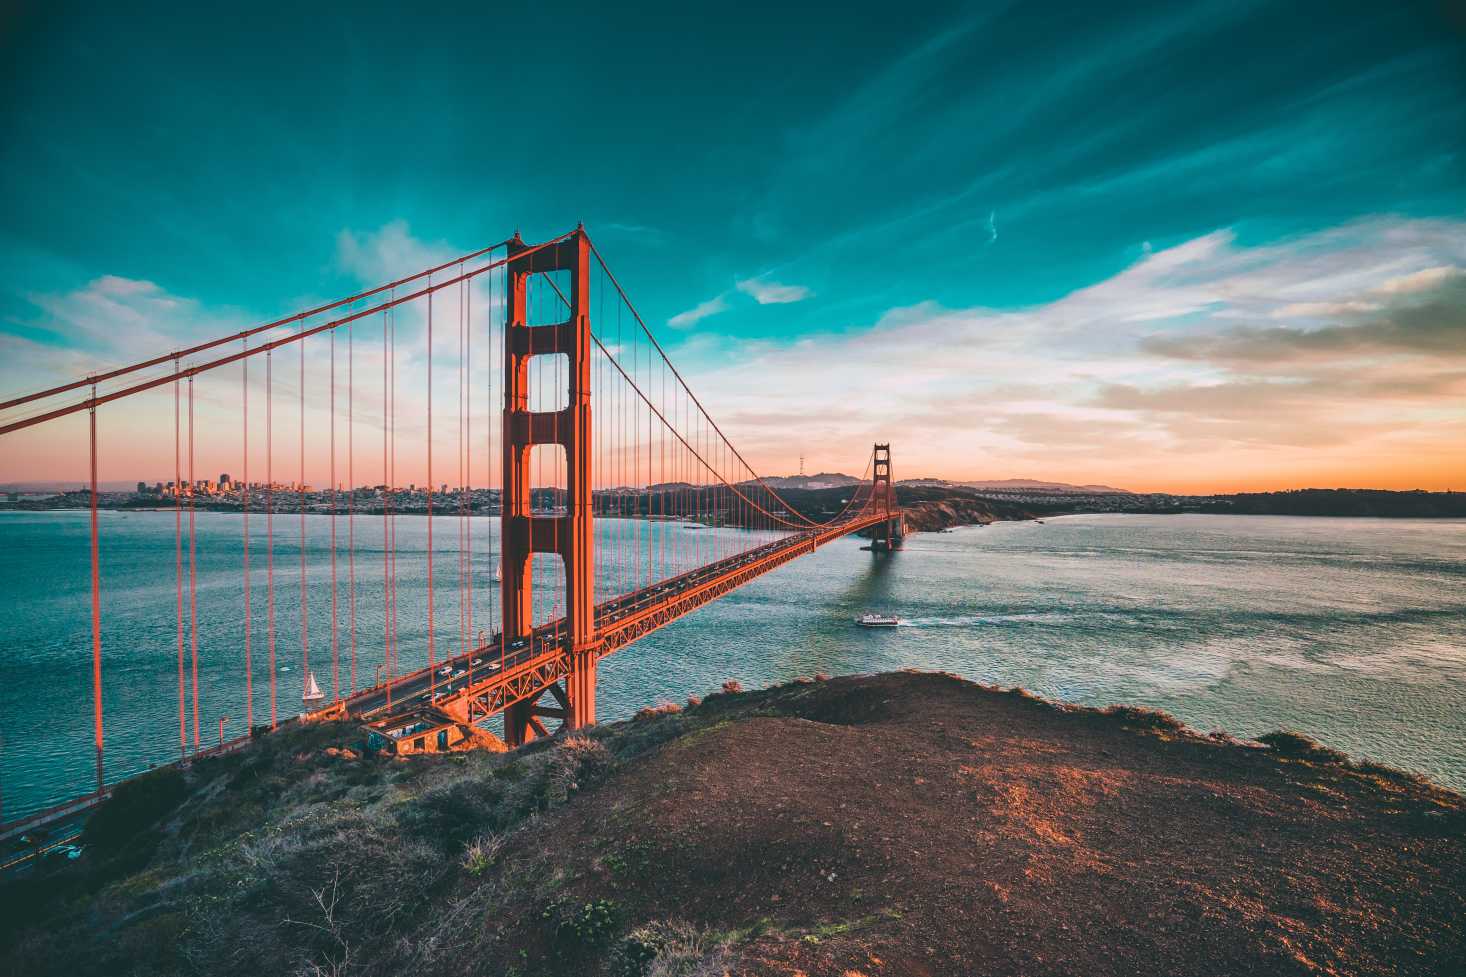 Planen Sie auf einer Reise an die Westküste der USA die Golden Gate Bridge in San Francisco ein